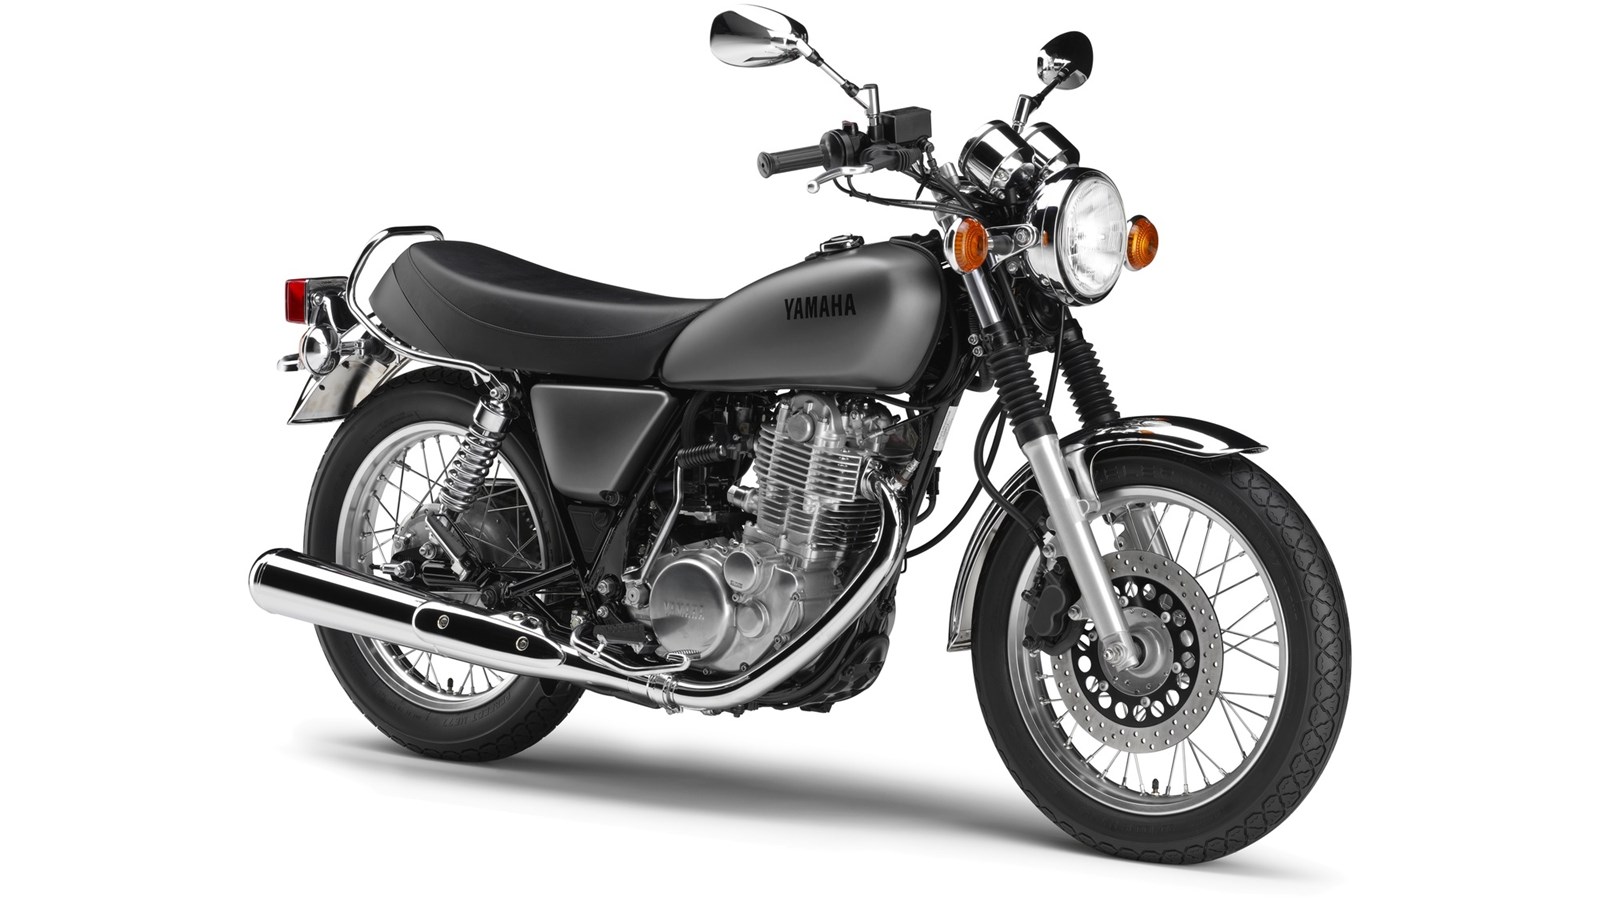 Stile "retrò" e tecnologia collaudata Yamaha SR400 ha superato la prova del tempo come nessun'altra moto. E' un modello che rappresenta il lato migliore del motociclismo.